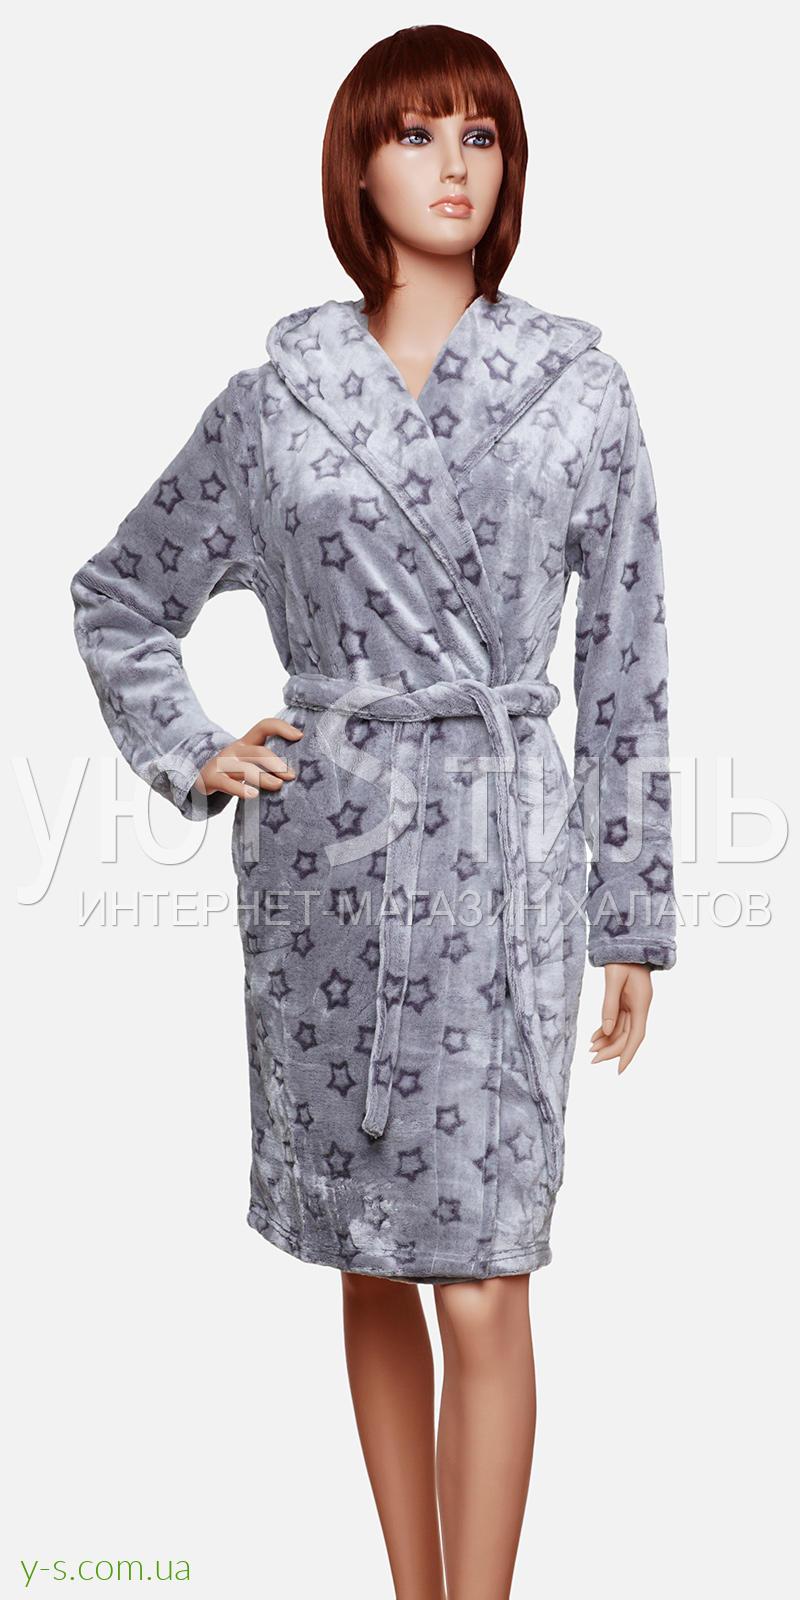 Женский пушистый халат со звездами VA6205